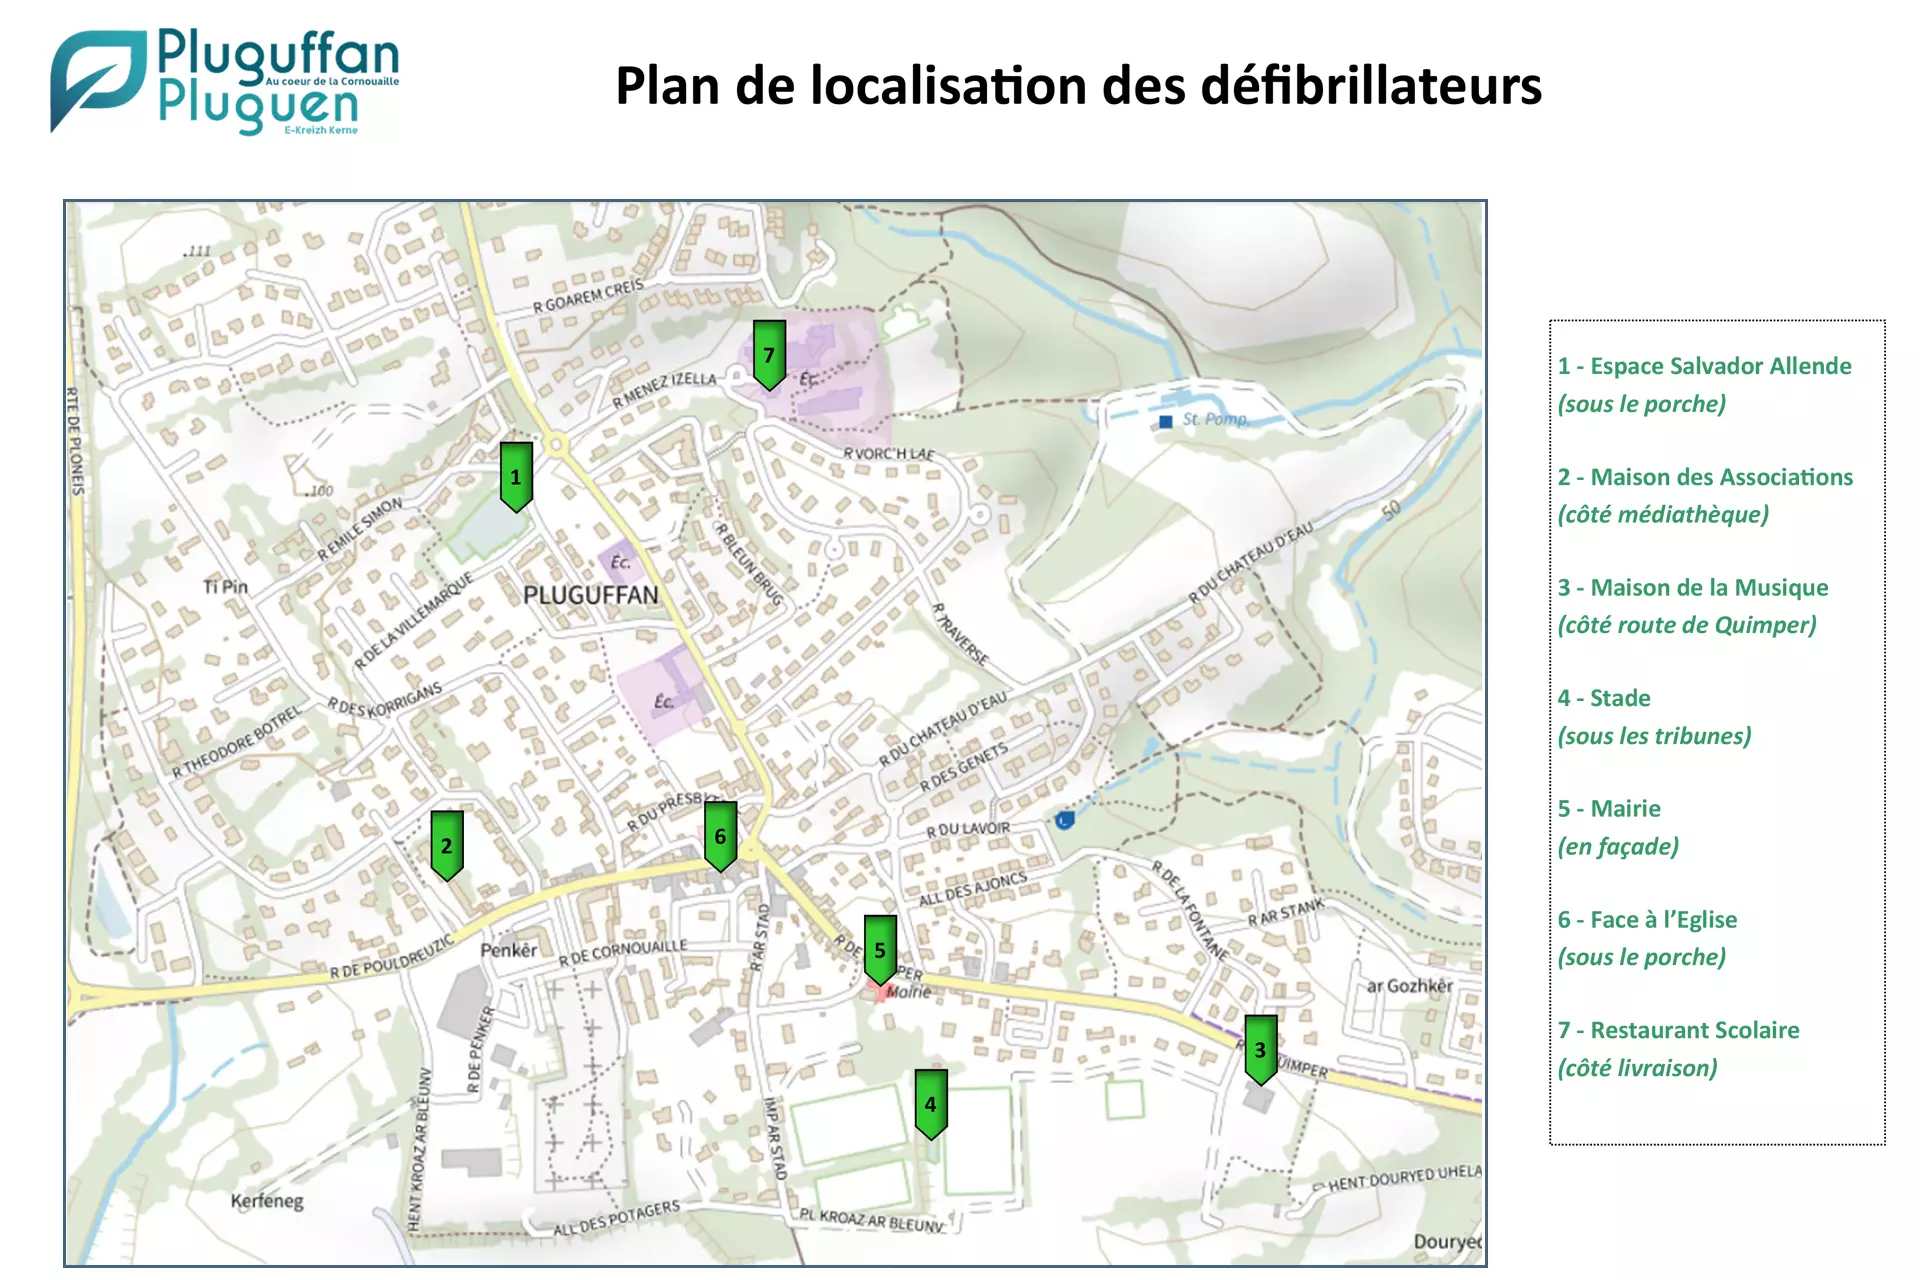 Plan des defibrilateurs commune de Pluguffan